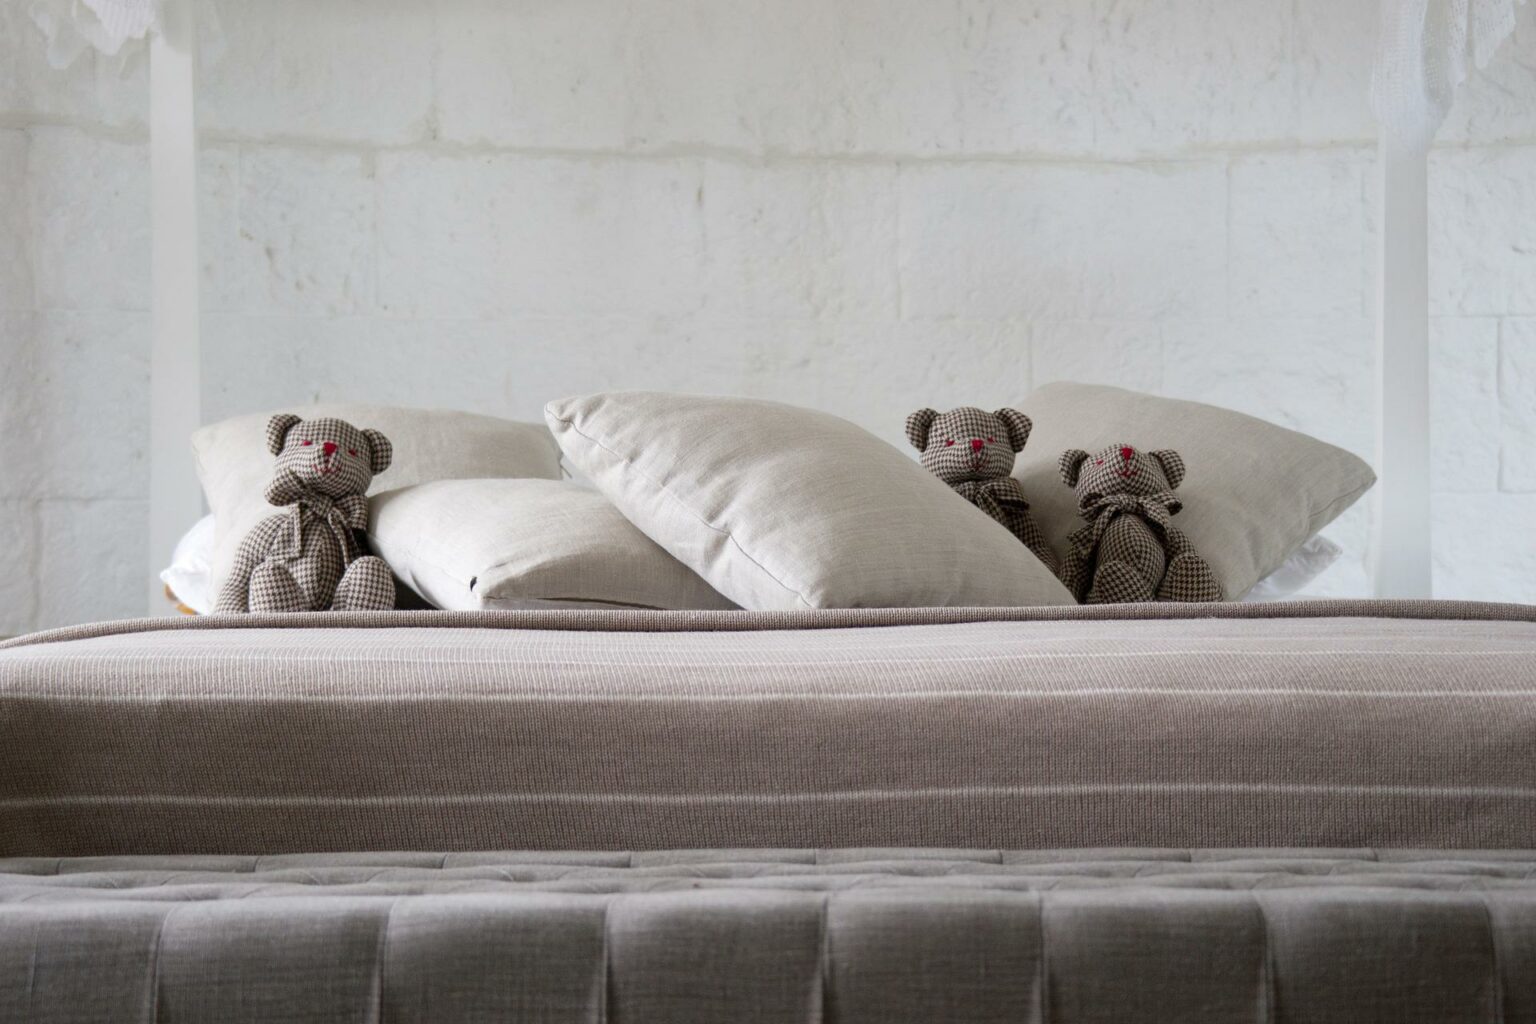 bear mattress firm level